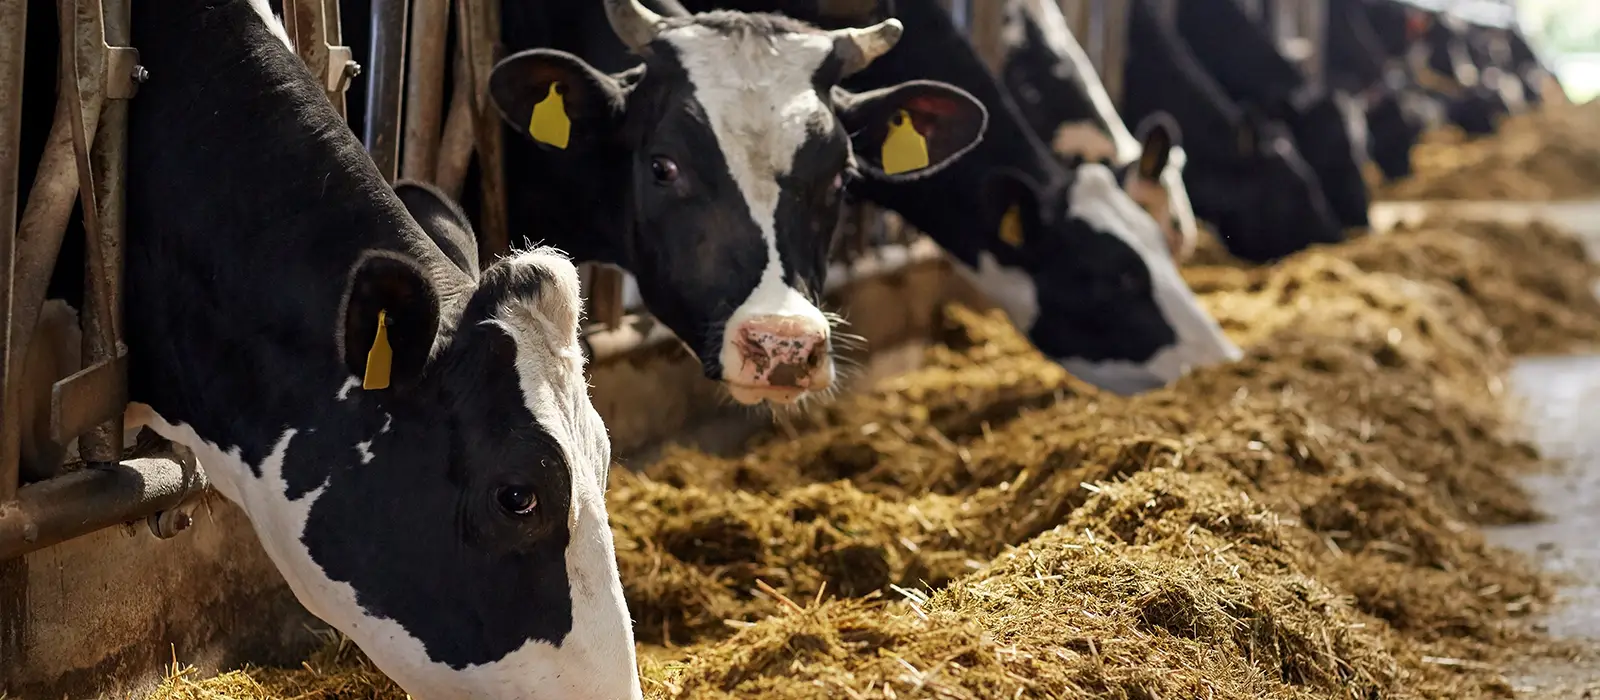 Troupeau de vaches mangeant du foin dans une étable sur une ferme laitière.